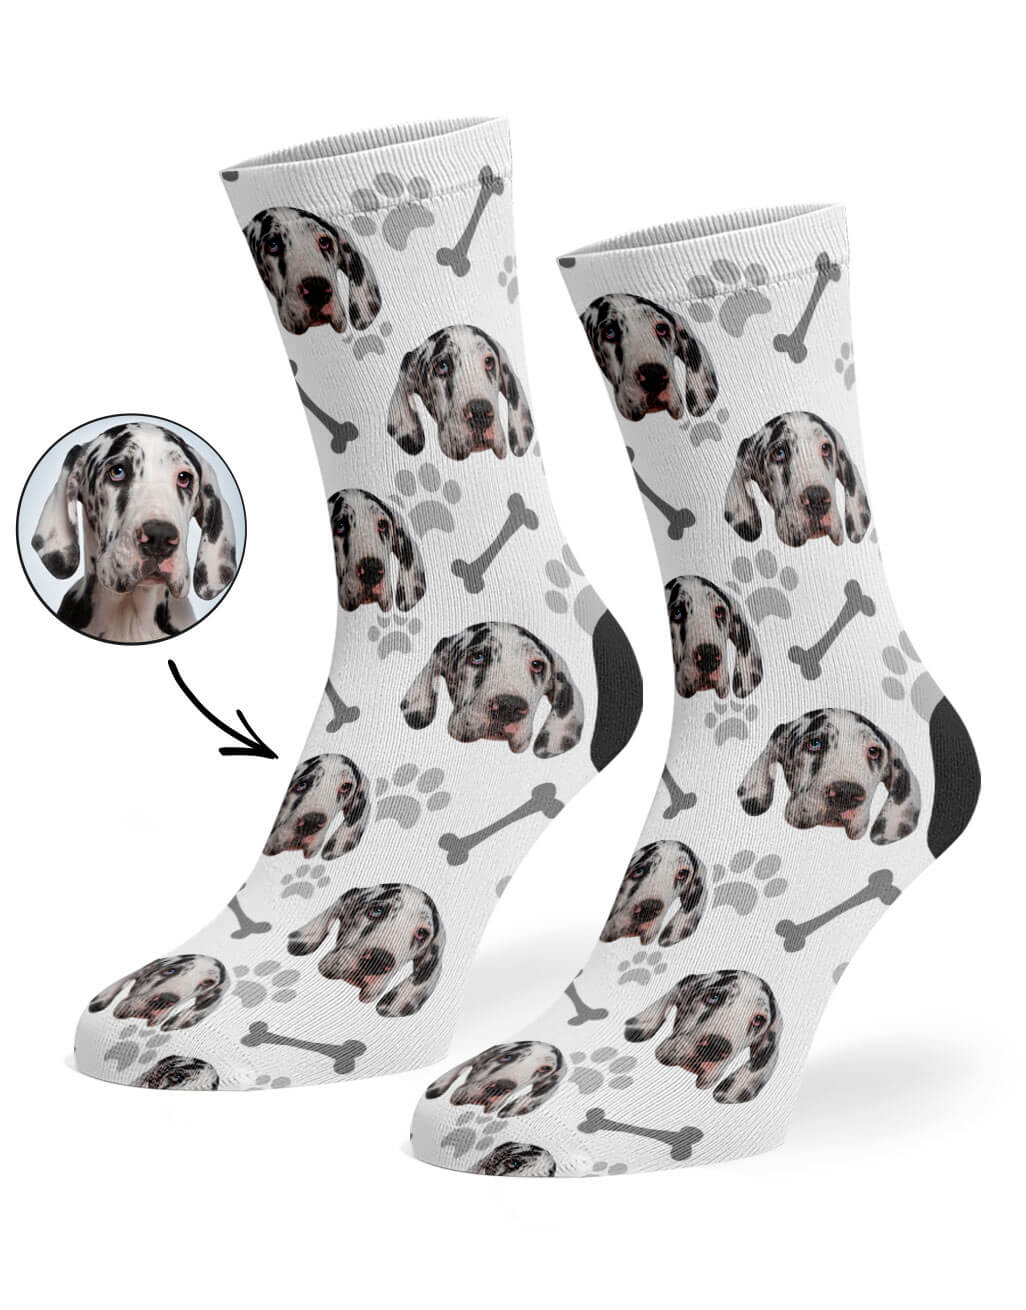 White Your Dog On Socks